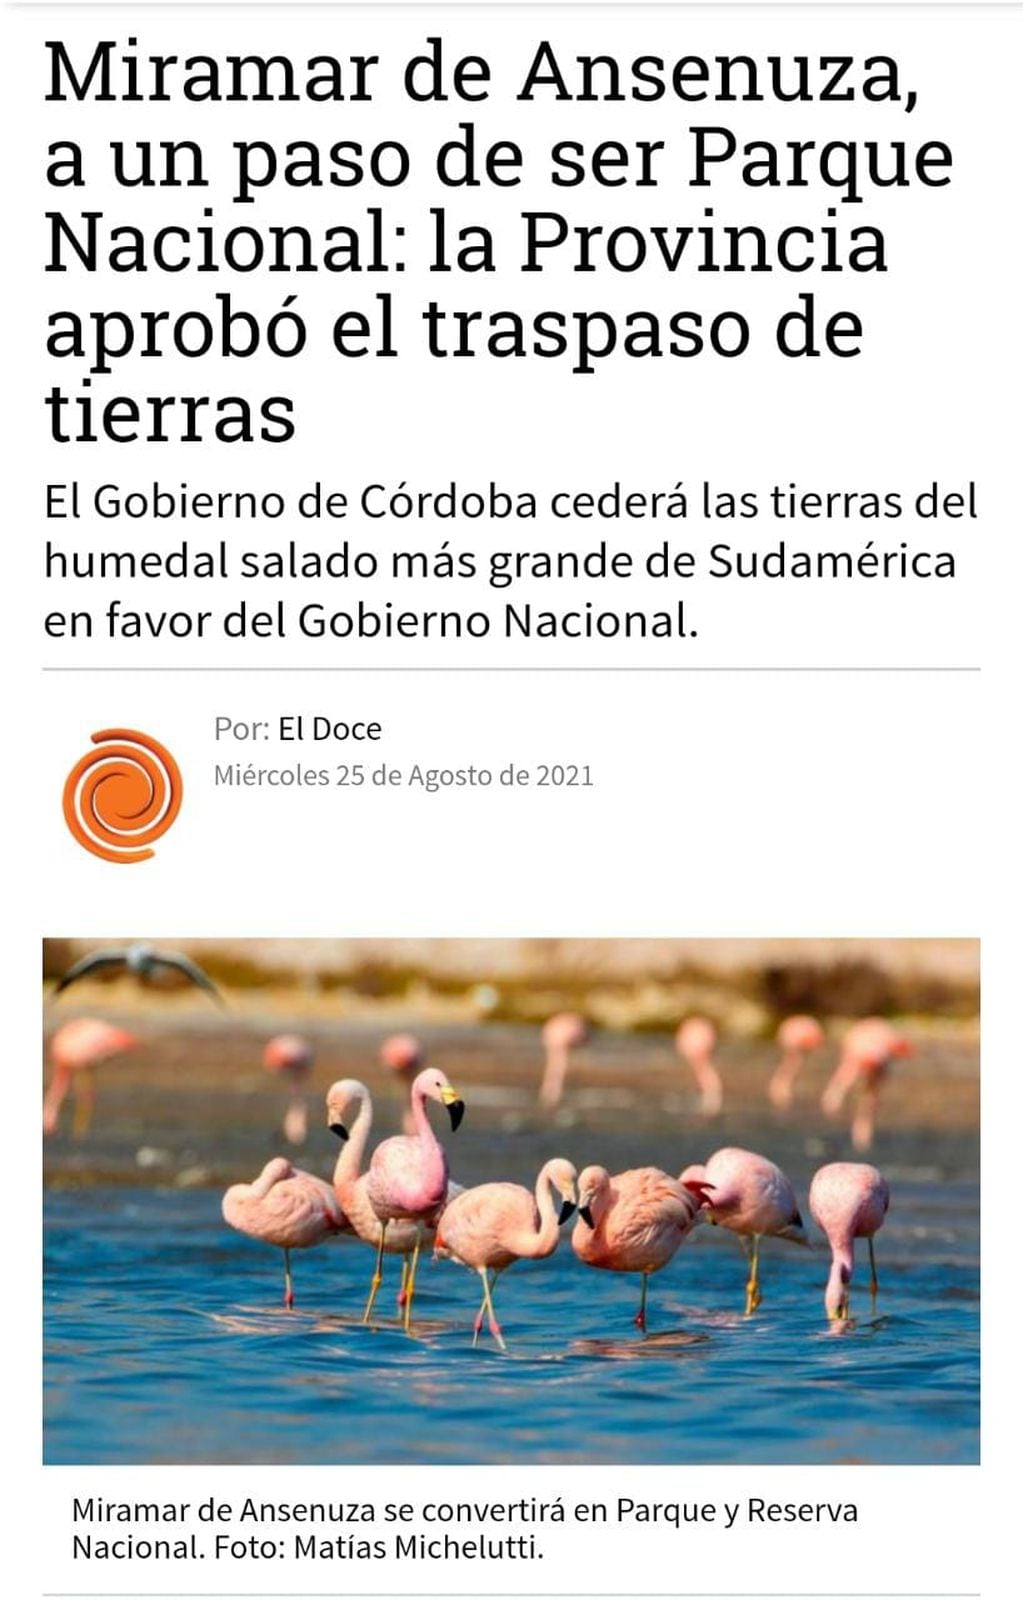 "Miramar de Ansenuza a un paso de ser parque nacional: la Provincia aprobó el traspaso de tierras". El doce.